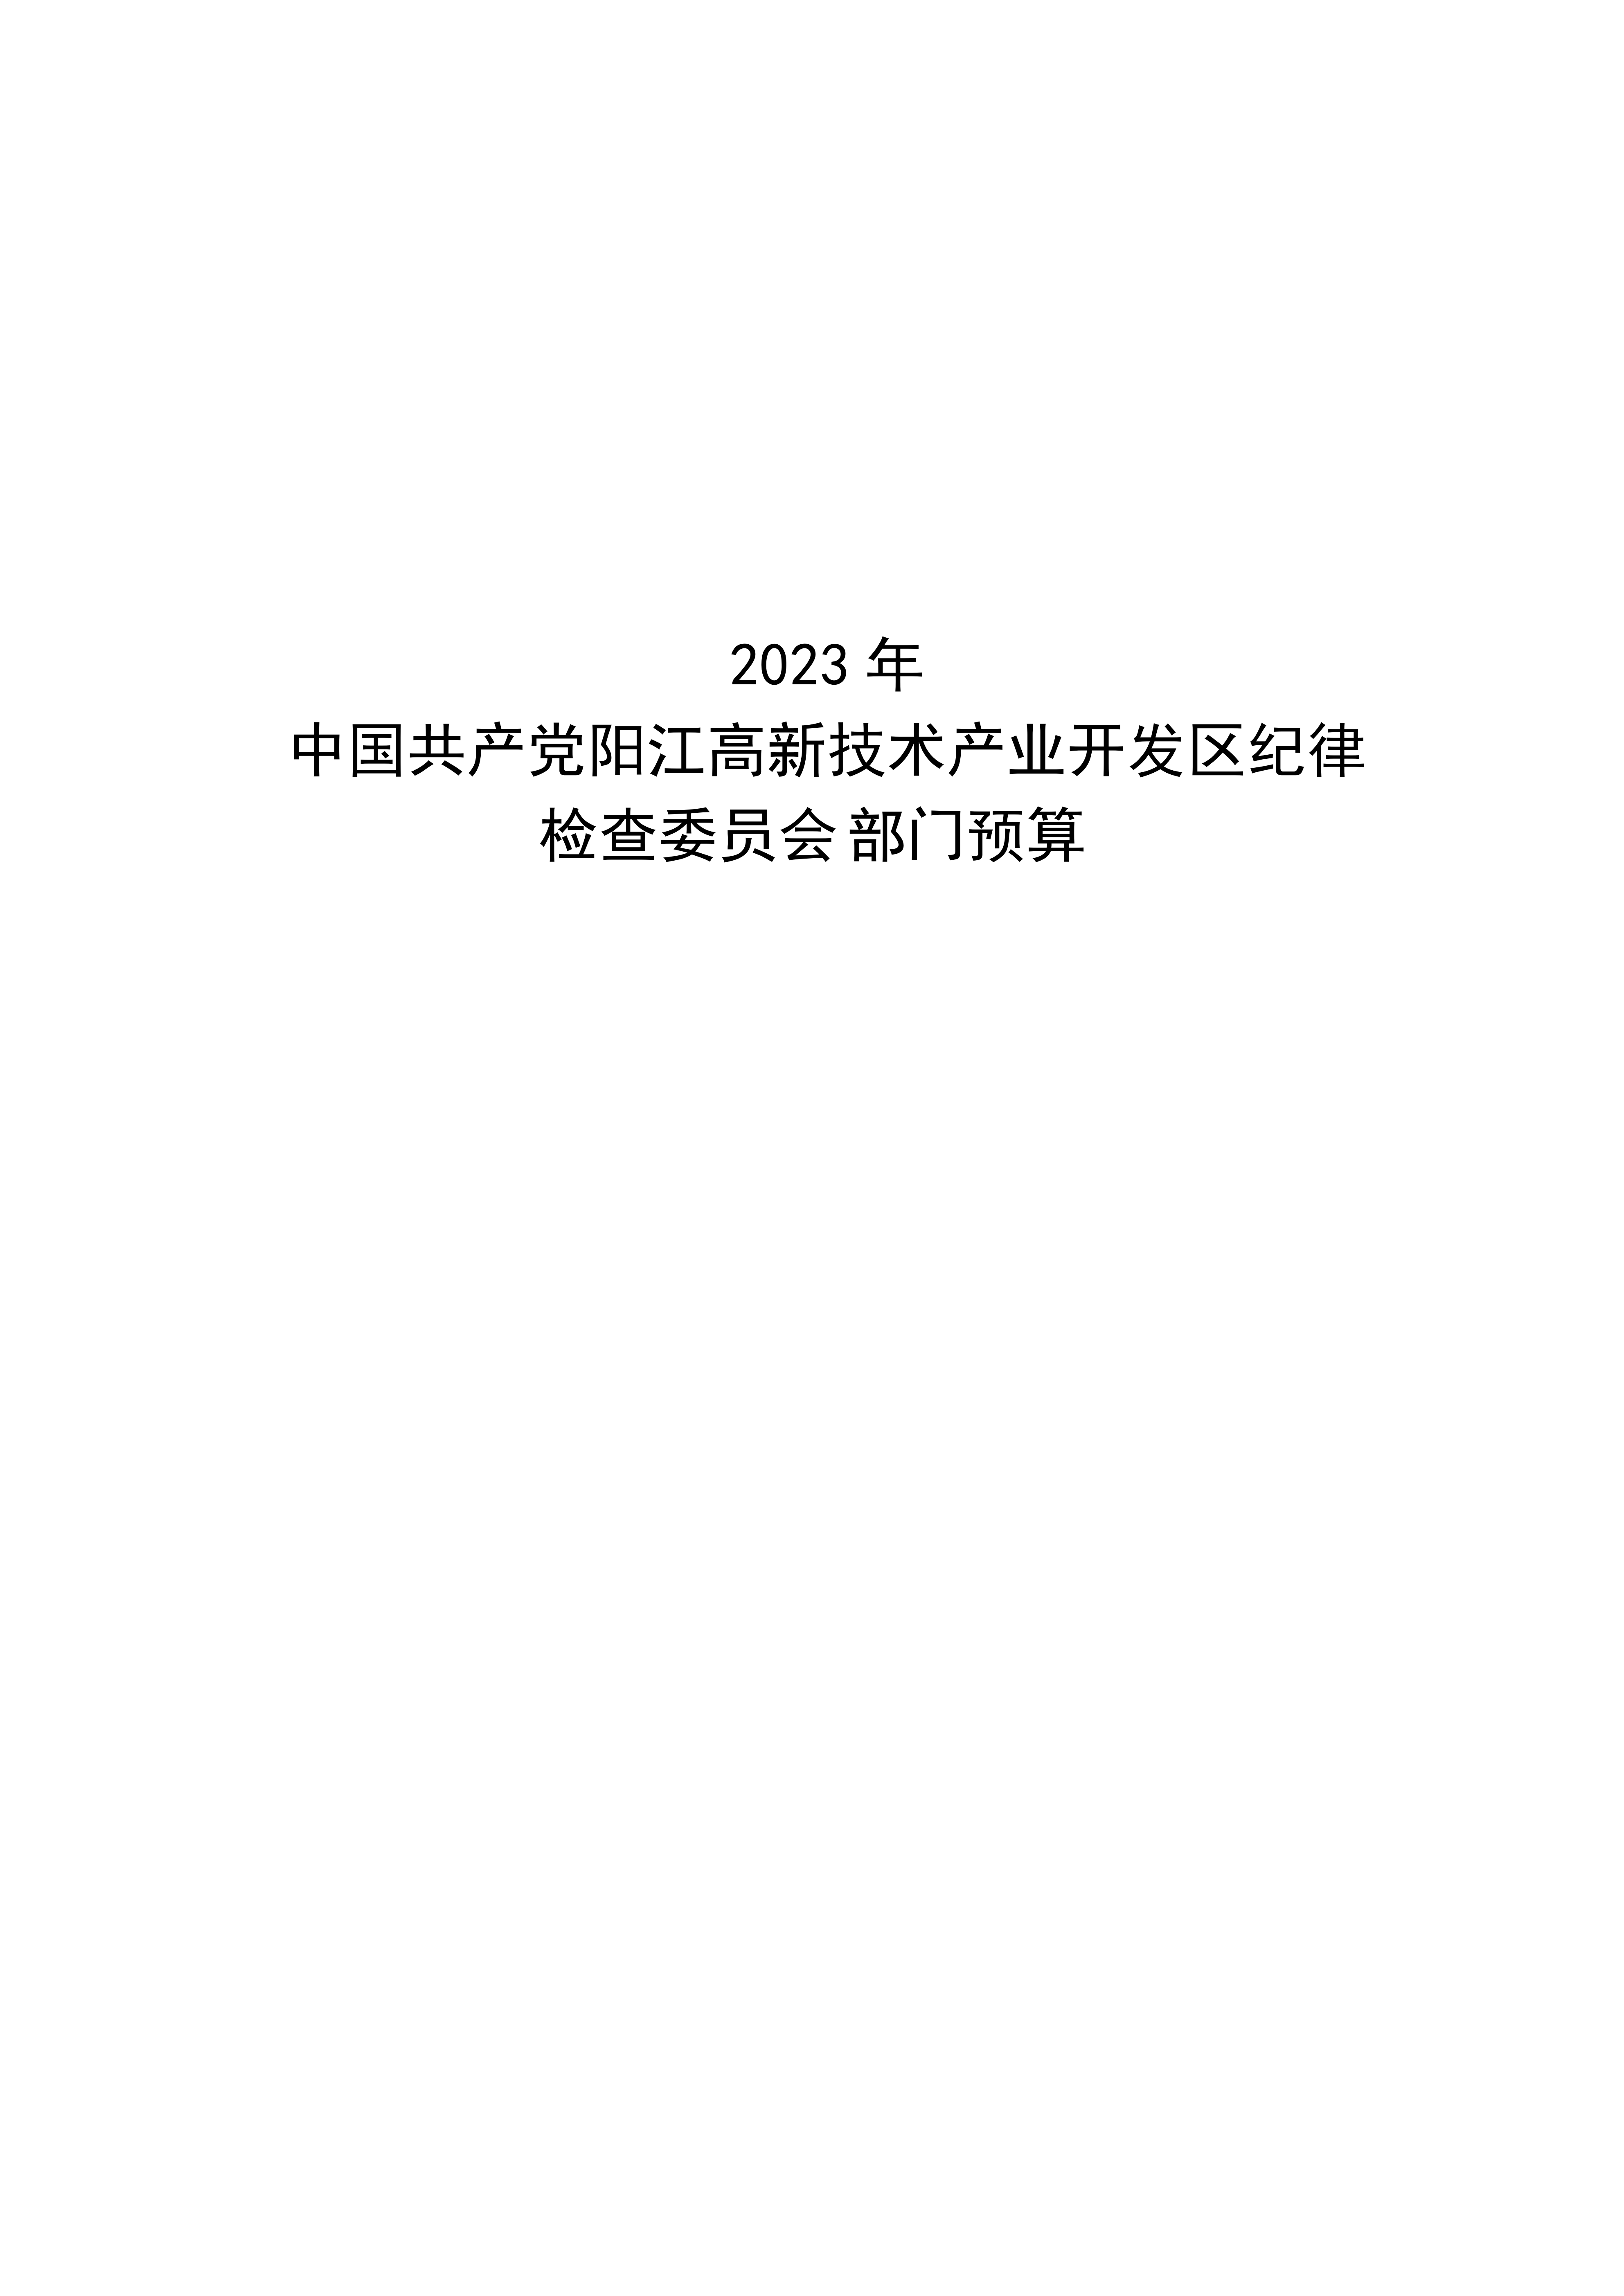 2023年中国共产党阳江高新技术产业开发区纪律检查委员会部门预算_00.png